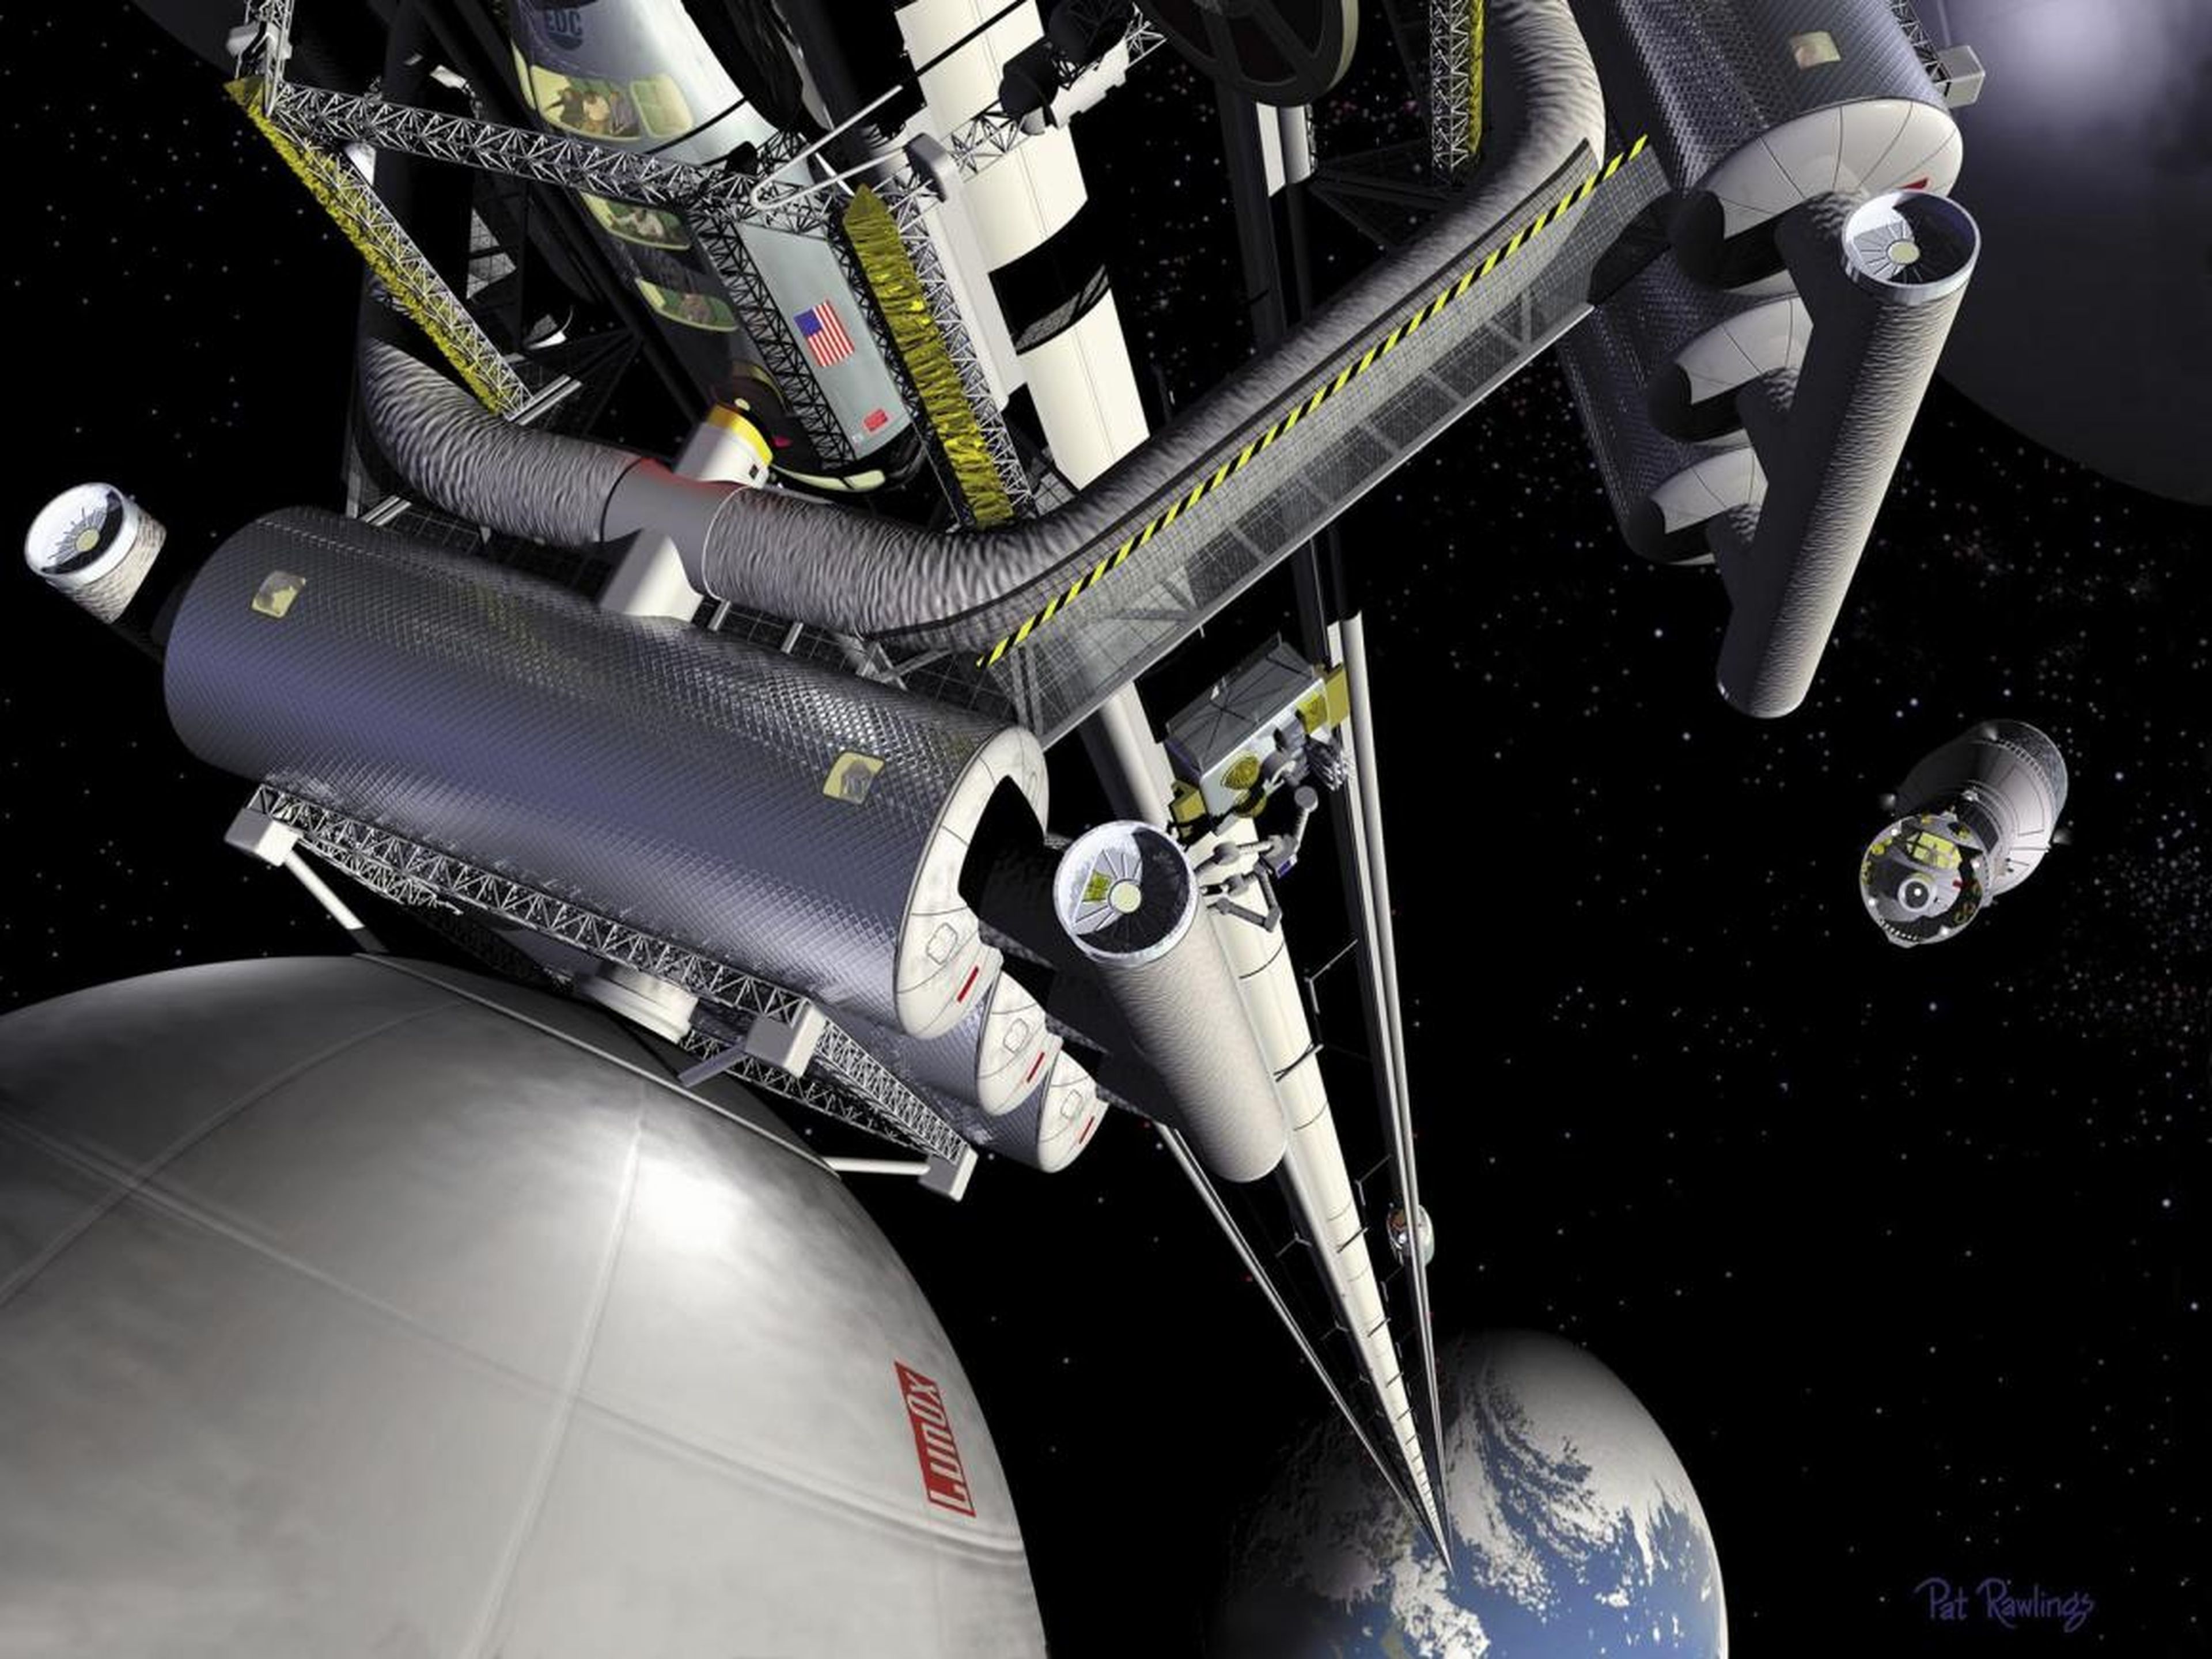 Esta ilustración del artista Pat Rawling muestra el concepto de un ascensor espacial visto desde la estación de trasbordo geoestacionaria mirando a lo largo del ascensor hacia la Tierra.